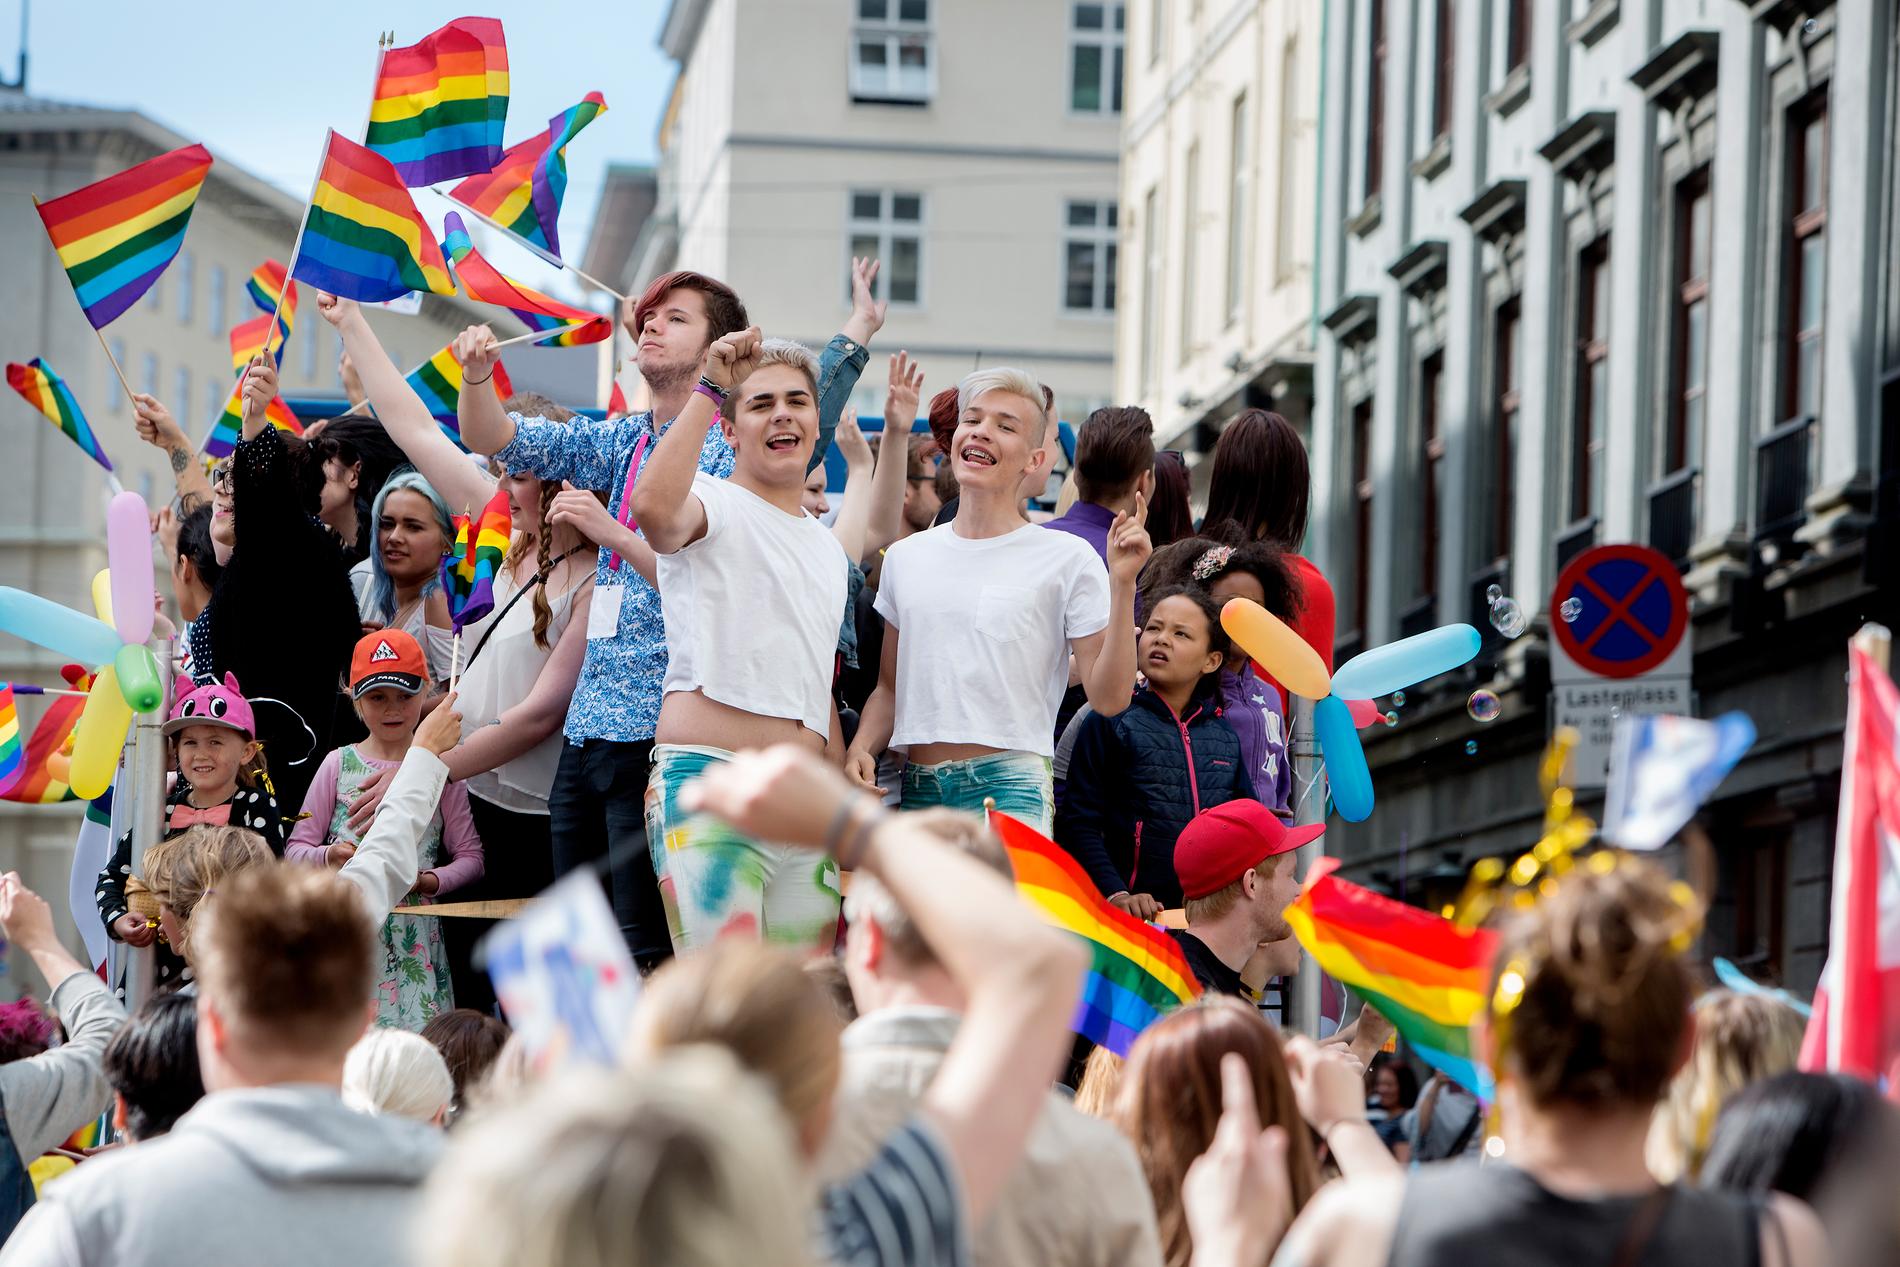 REKORDOPPMØTE: Aron Jasperr og André Klausen var strålende fornøyd med å delta i Regnbueparaden gjennom Bergens gater lørdag. Paraden var den største avsitt slag som er blitt arrangert i Bergen.